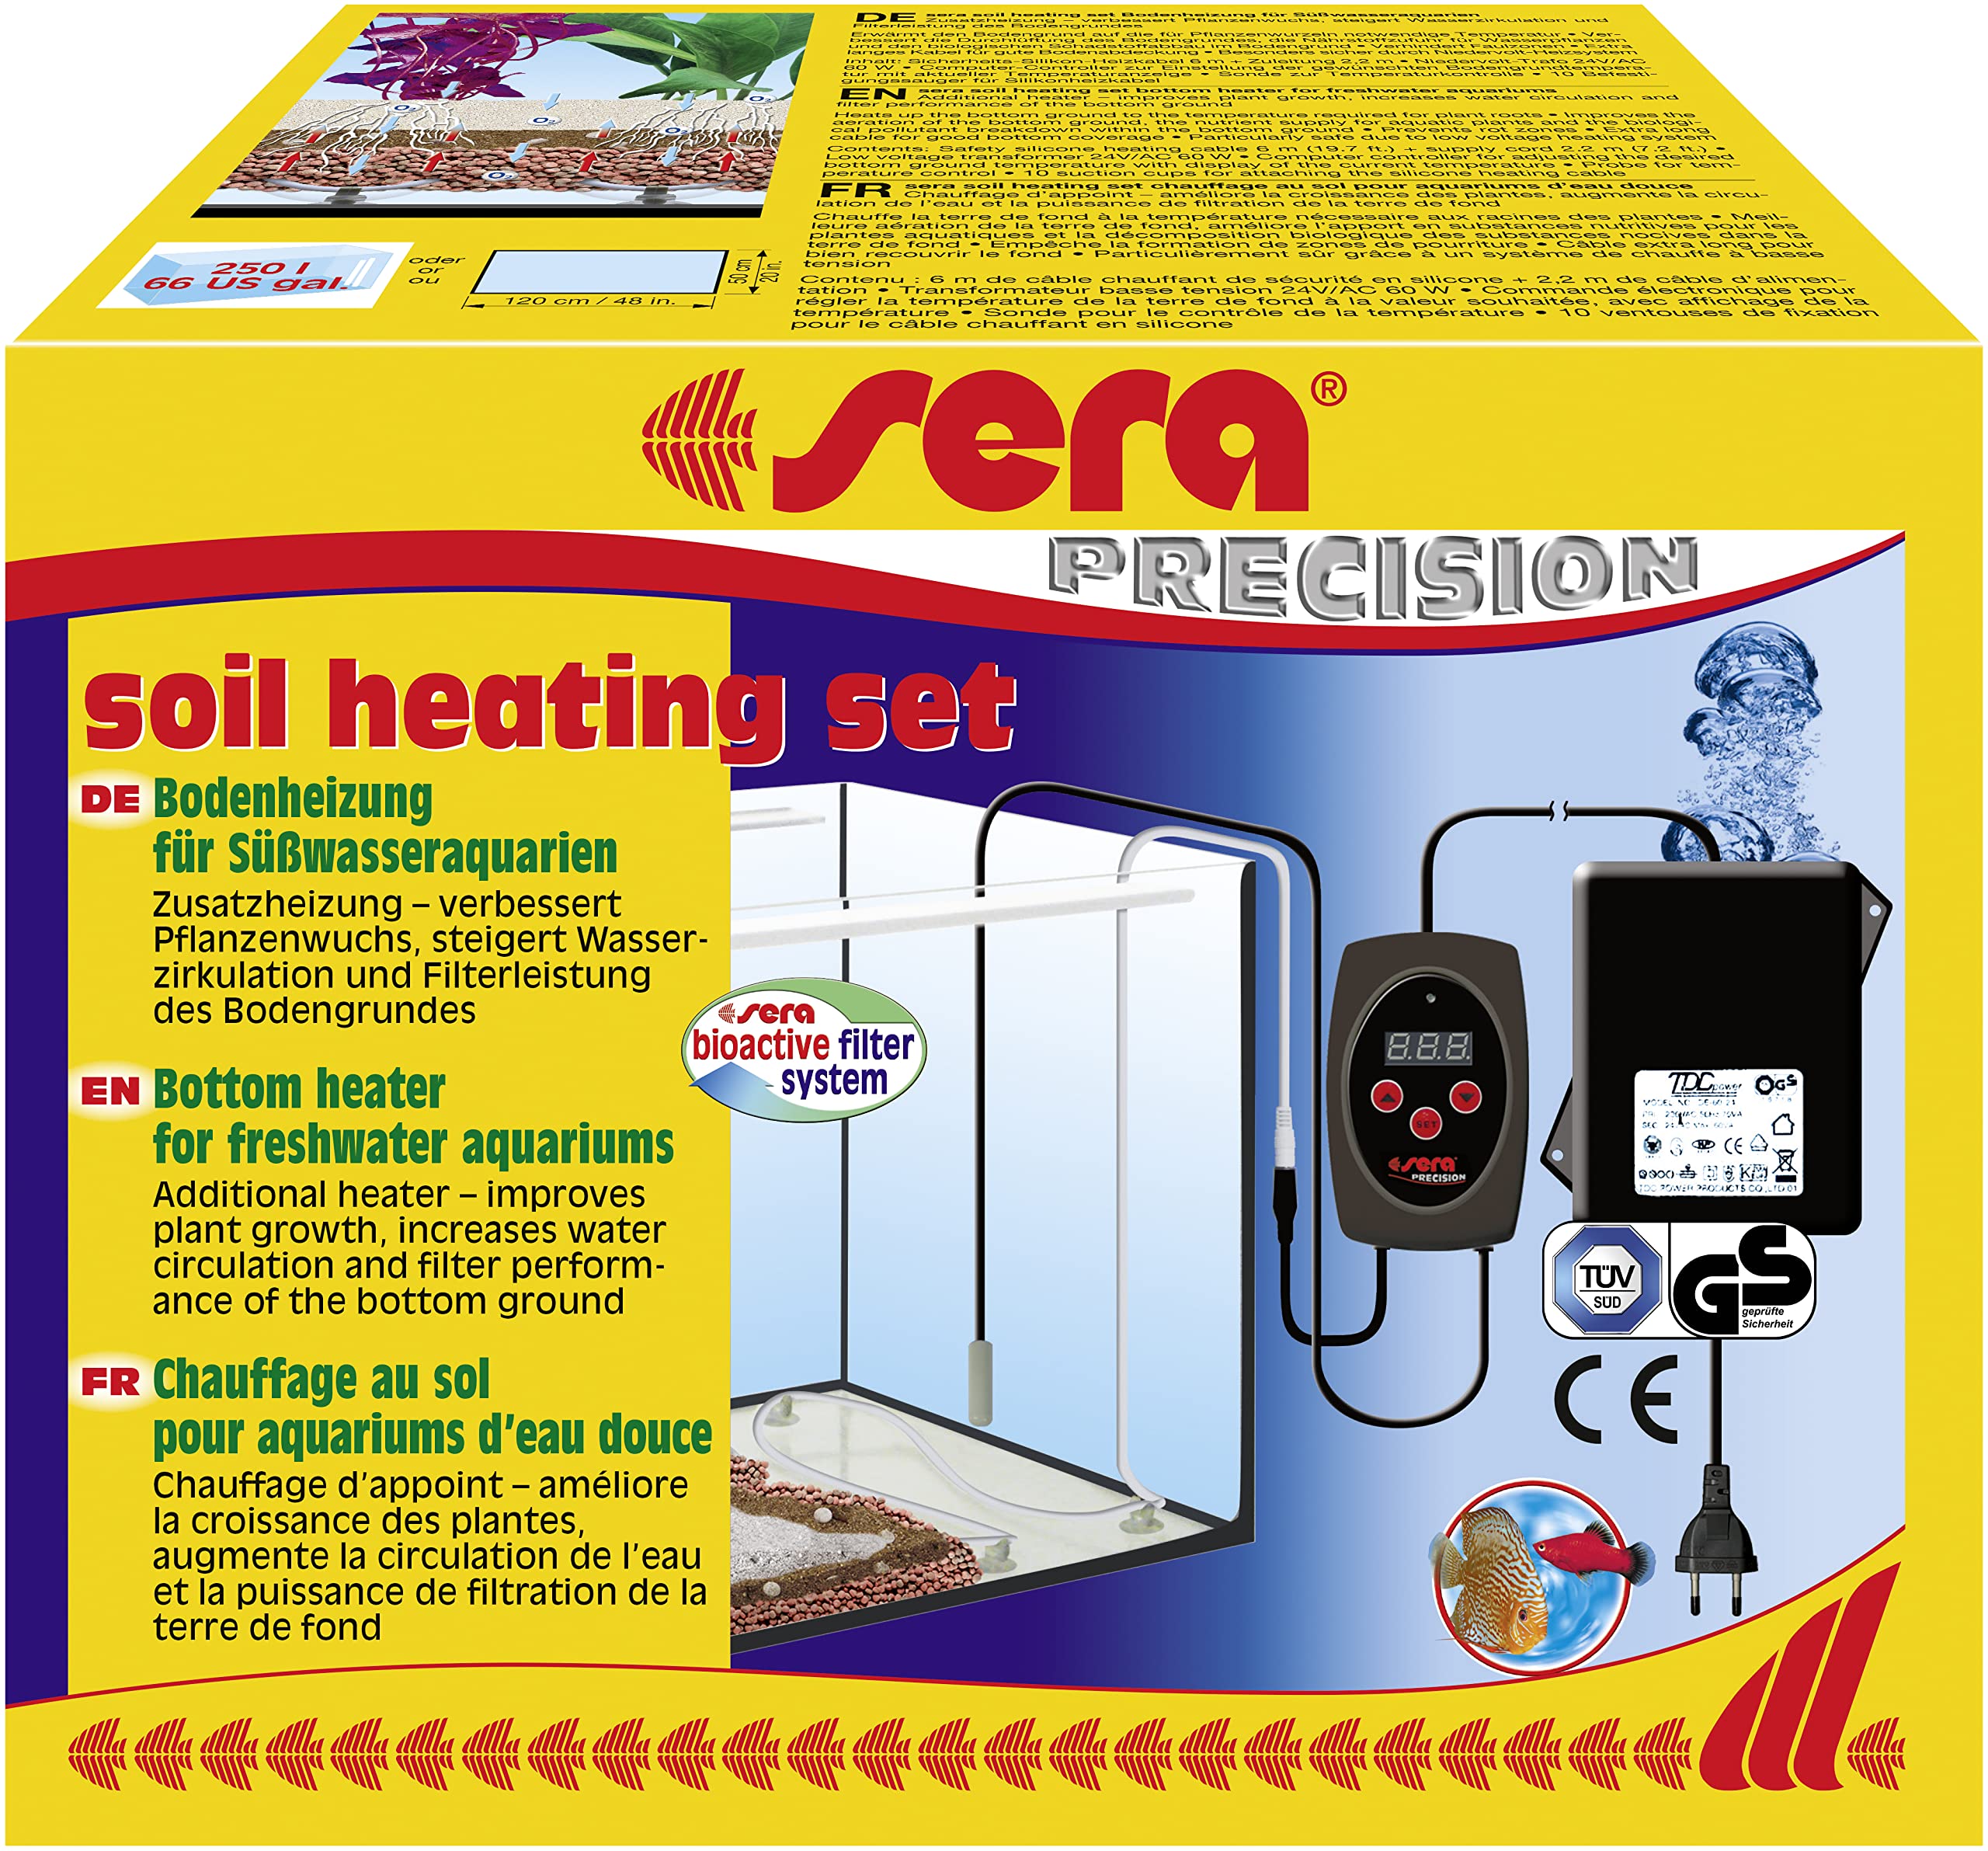 sera soil heating set - Computergesteuerte Bodenheizung für Süßwasseraquarien, 1 Stück (1er Pack)